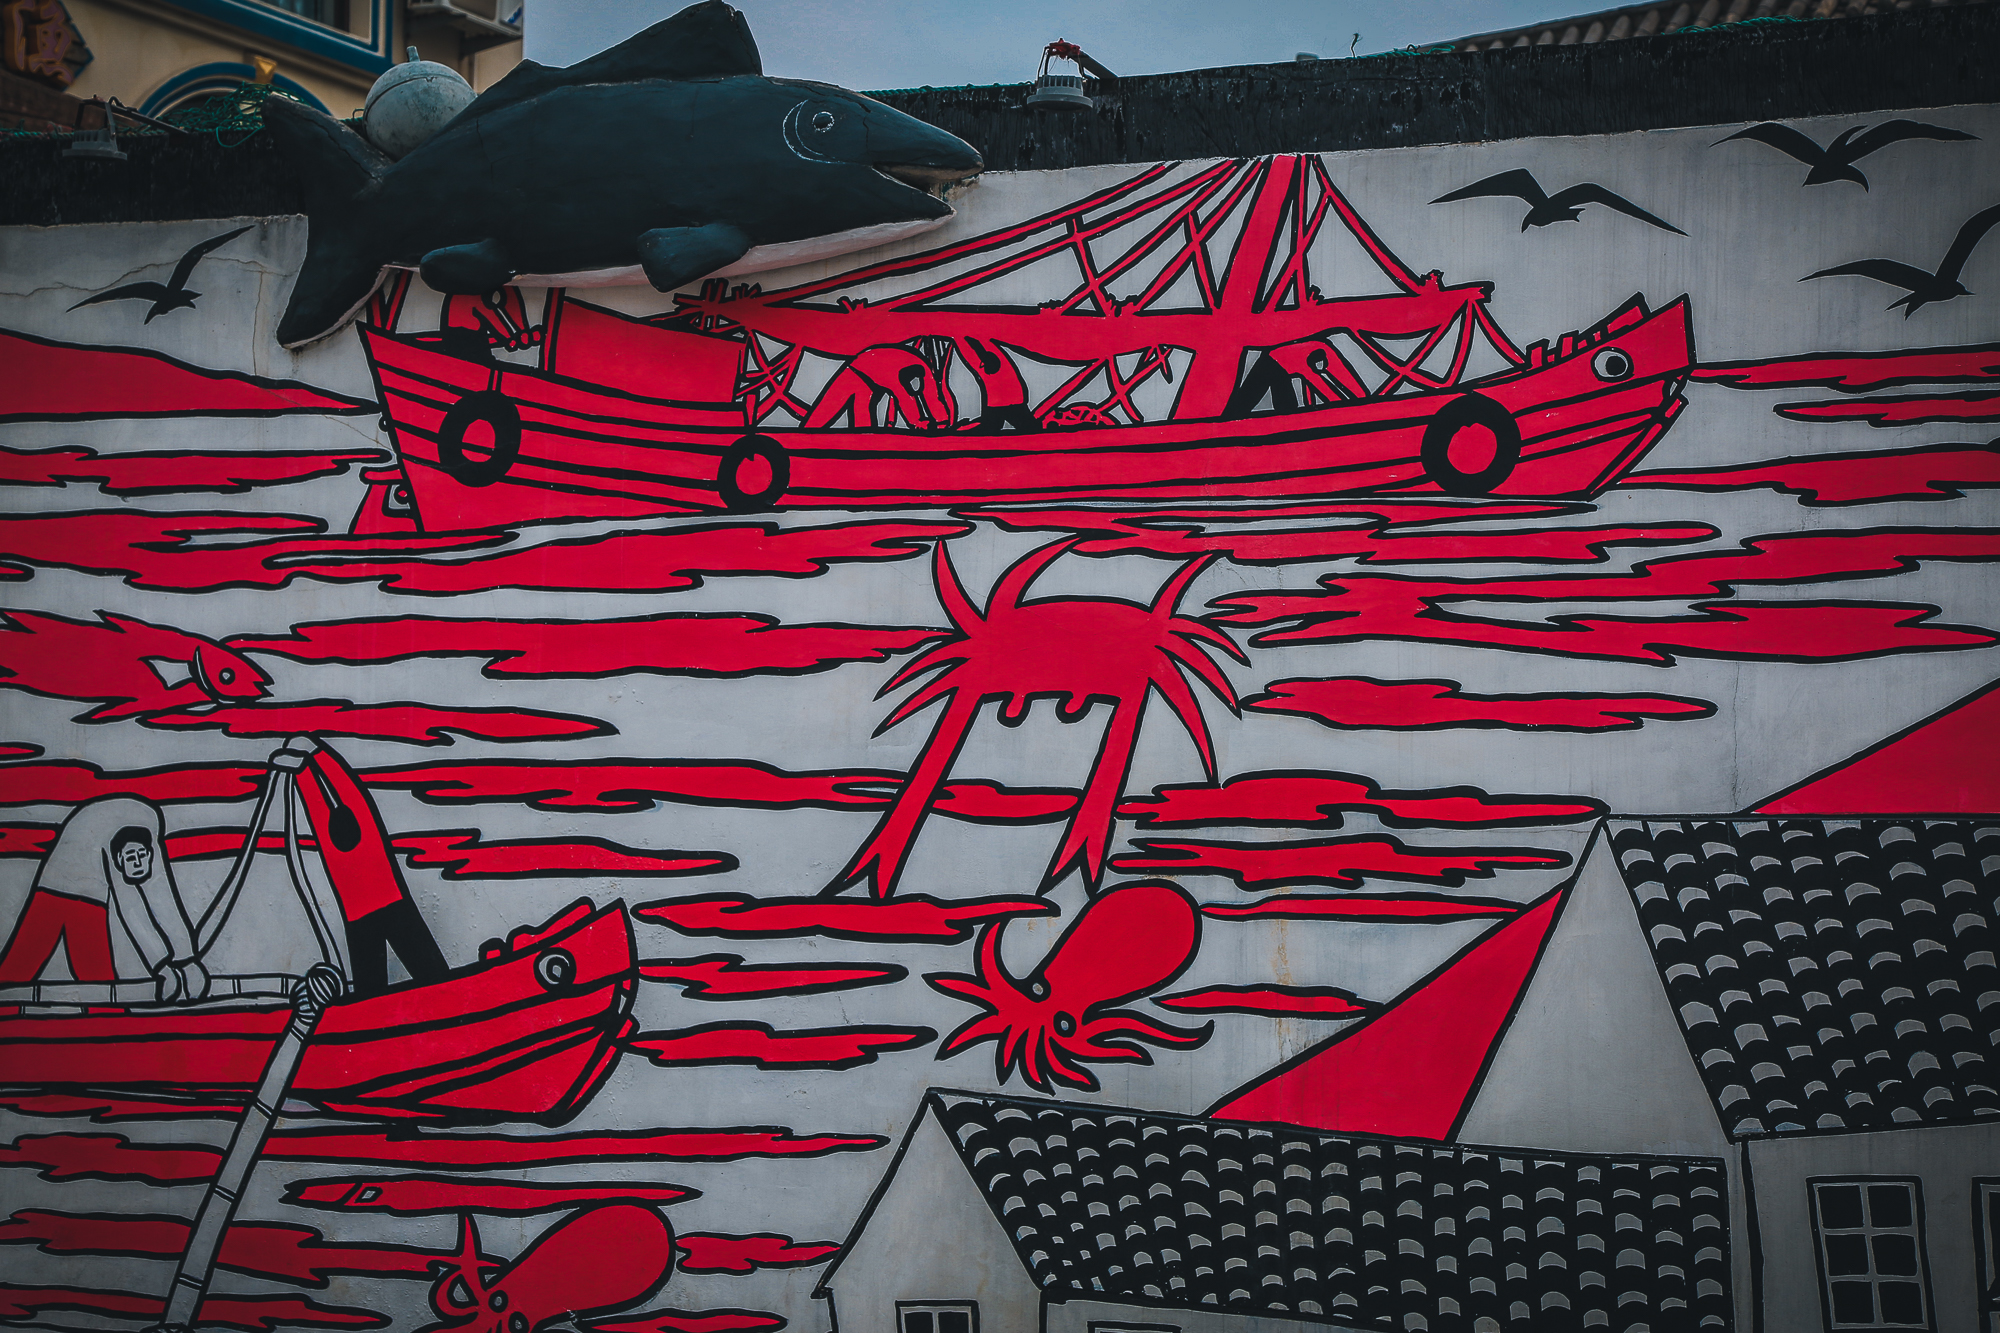 所以嵊泗渔民画的雏形,大抵起源于海上讨生活的渔家面对大海的敬畏之